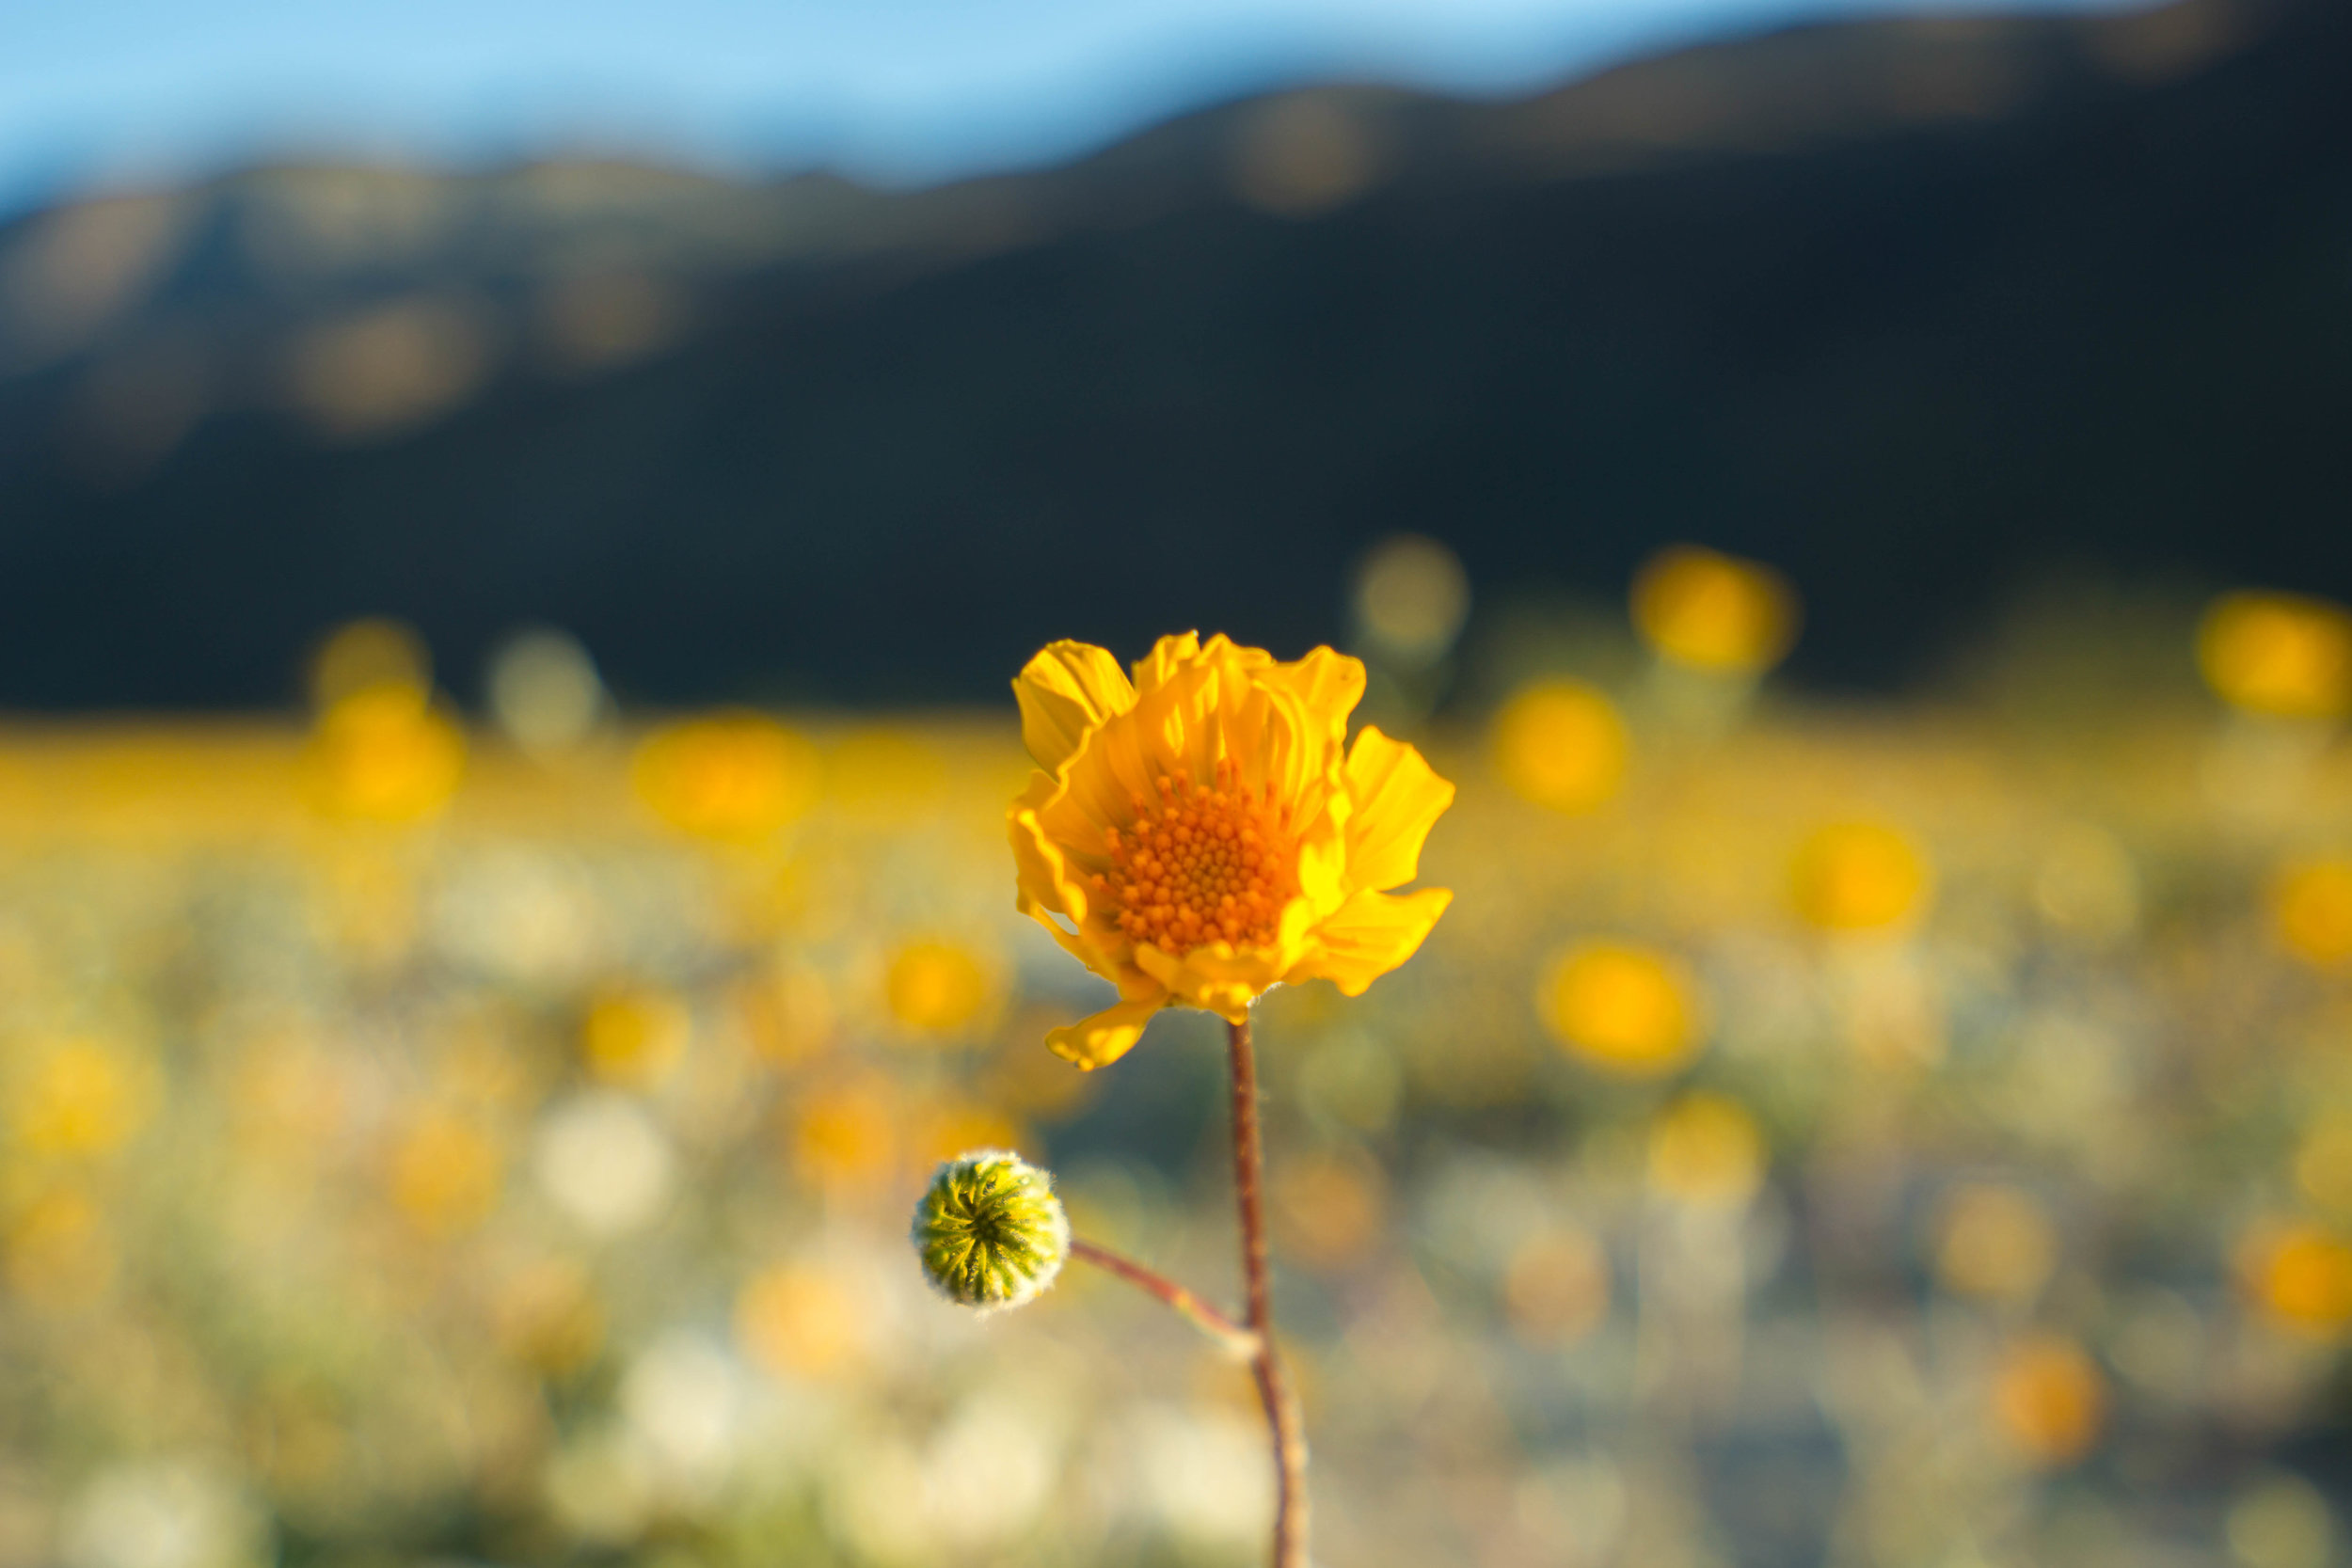 A lone desert sunflower